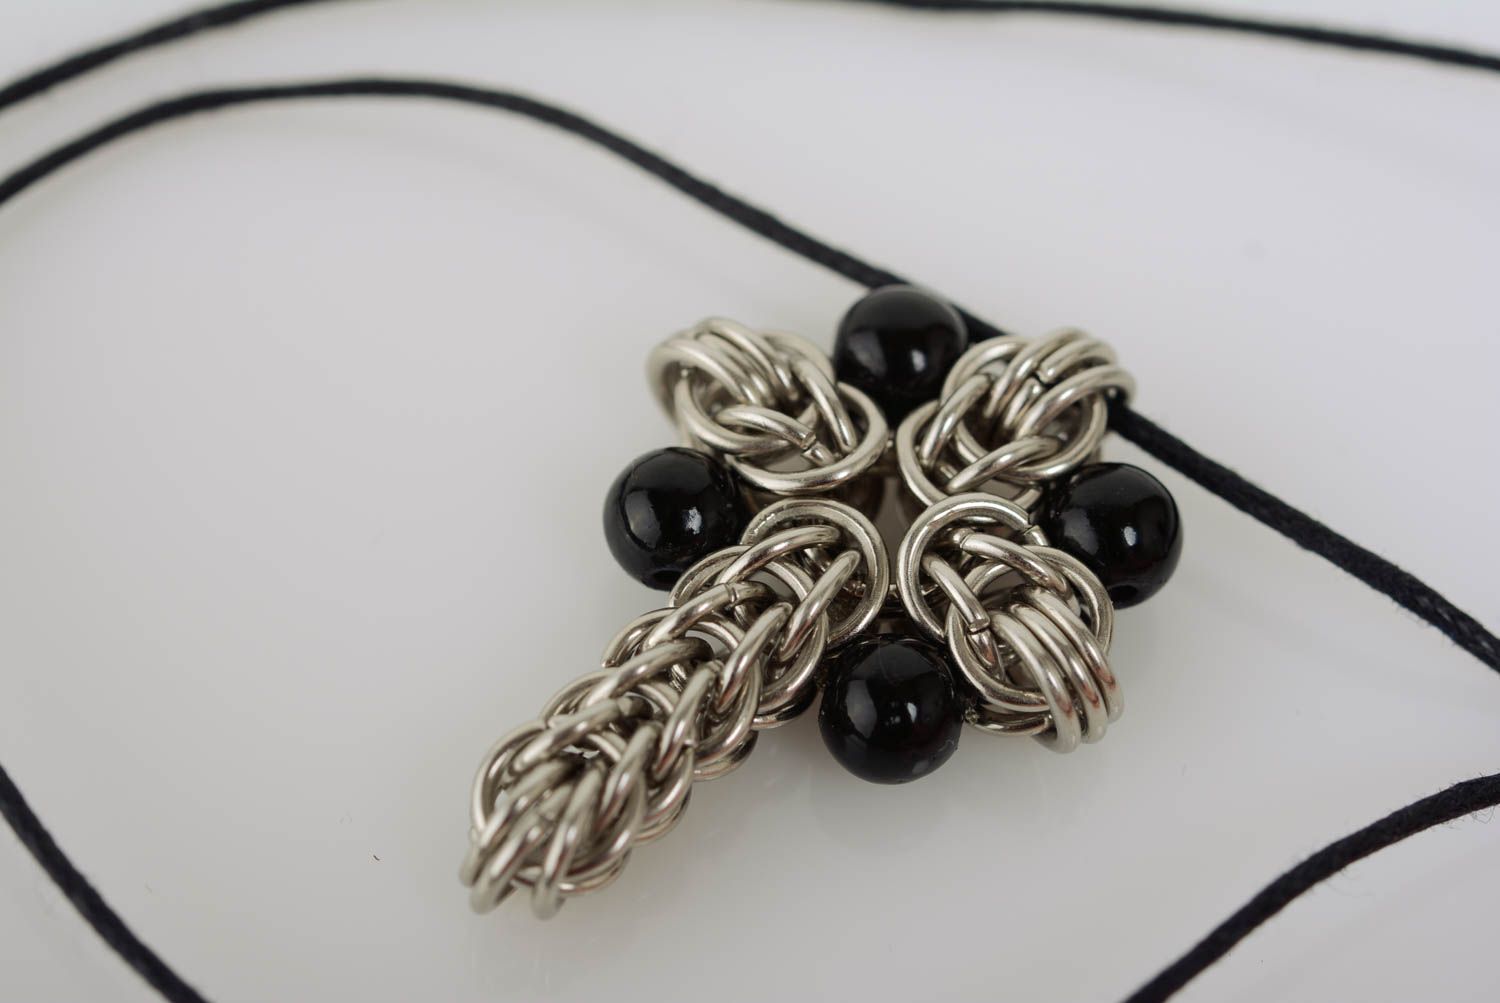 Крестик из металла на шнурке кольчугоплетение с черными бусинами ручной работы фото 1